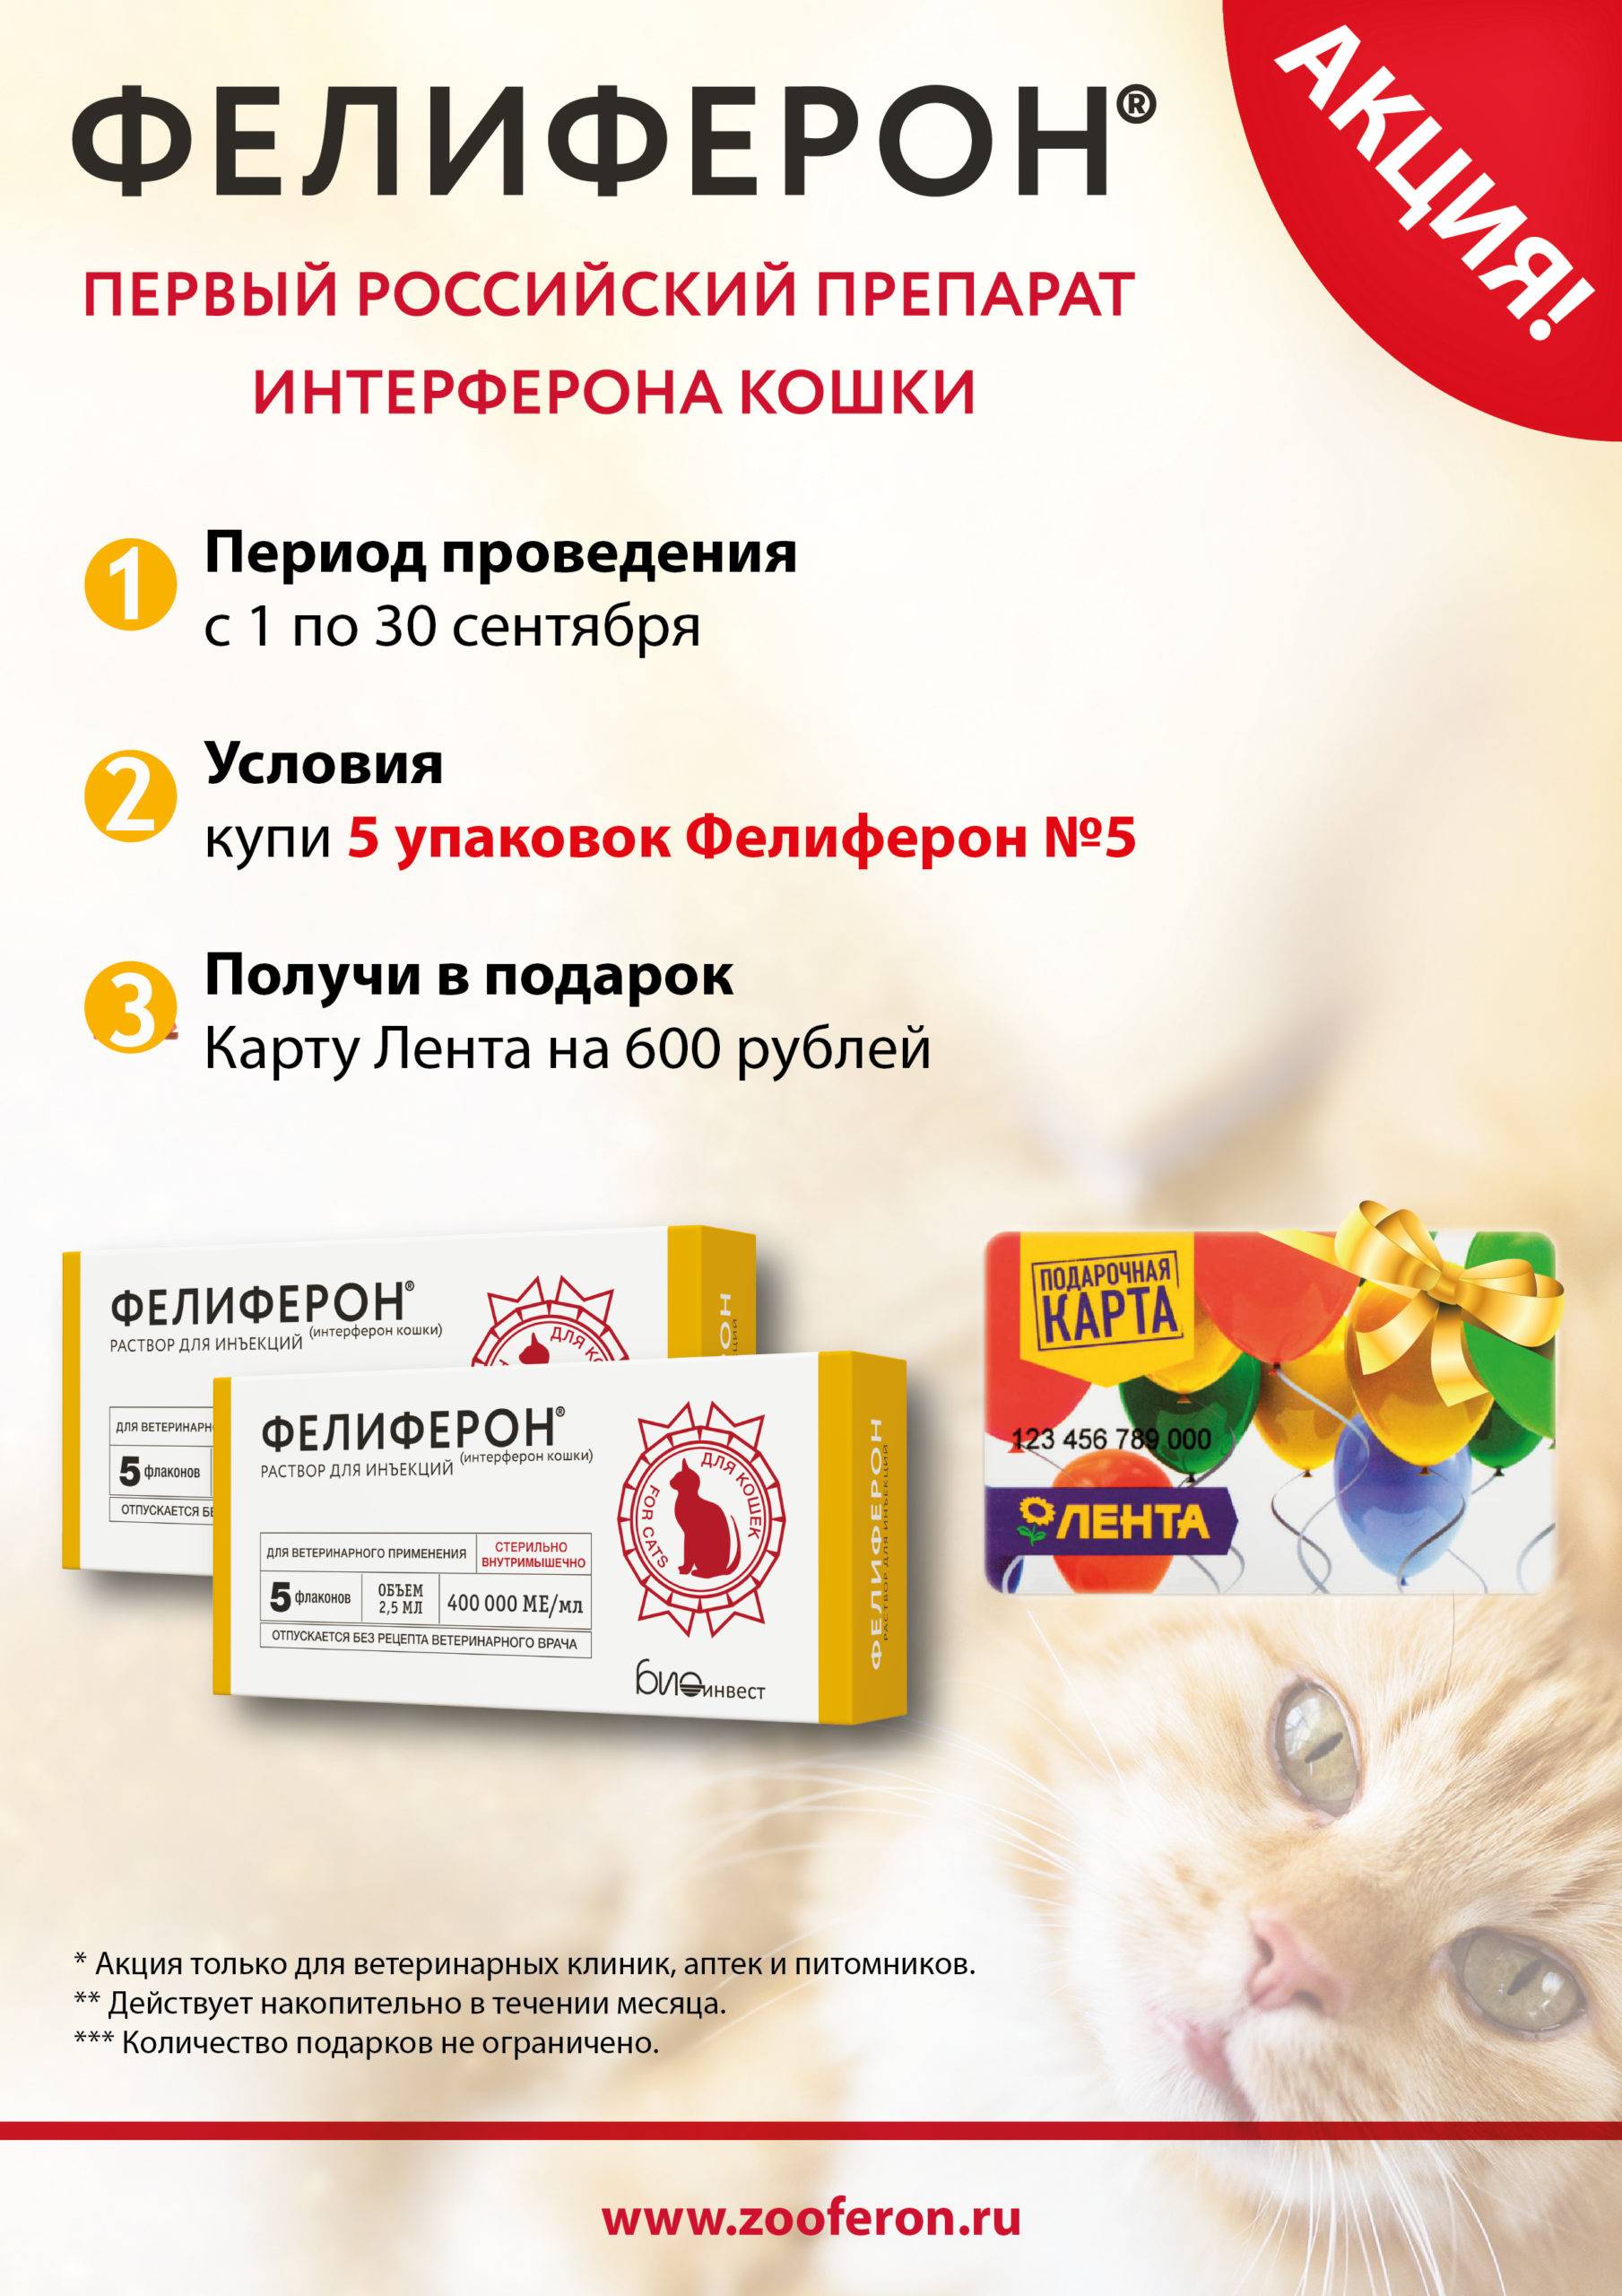 Ветеринарный препарат «фелиферон» для кошек: дозировка, инструкция по применению